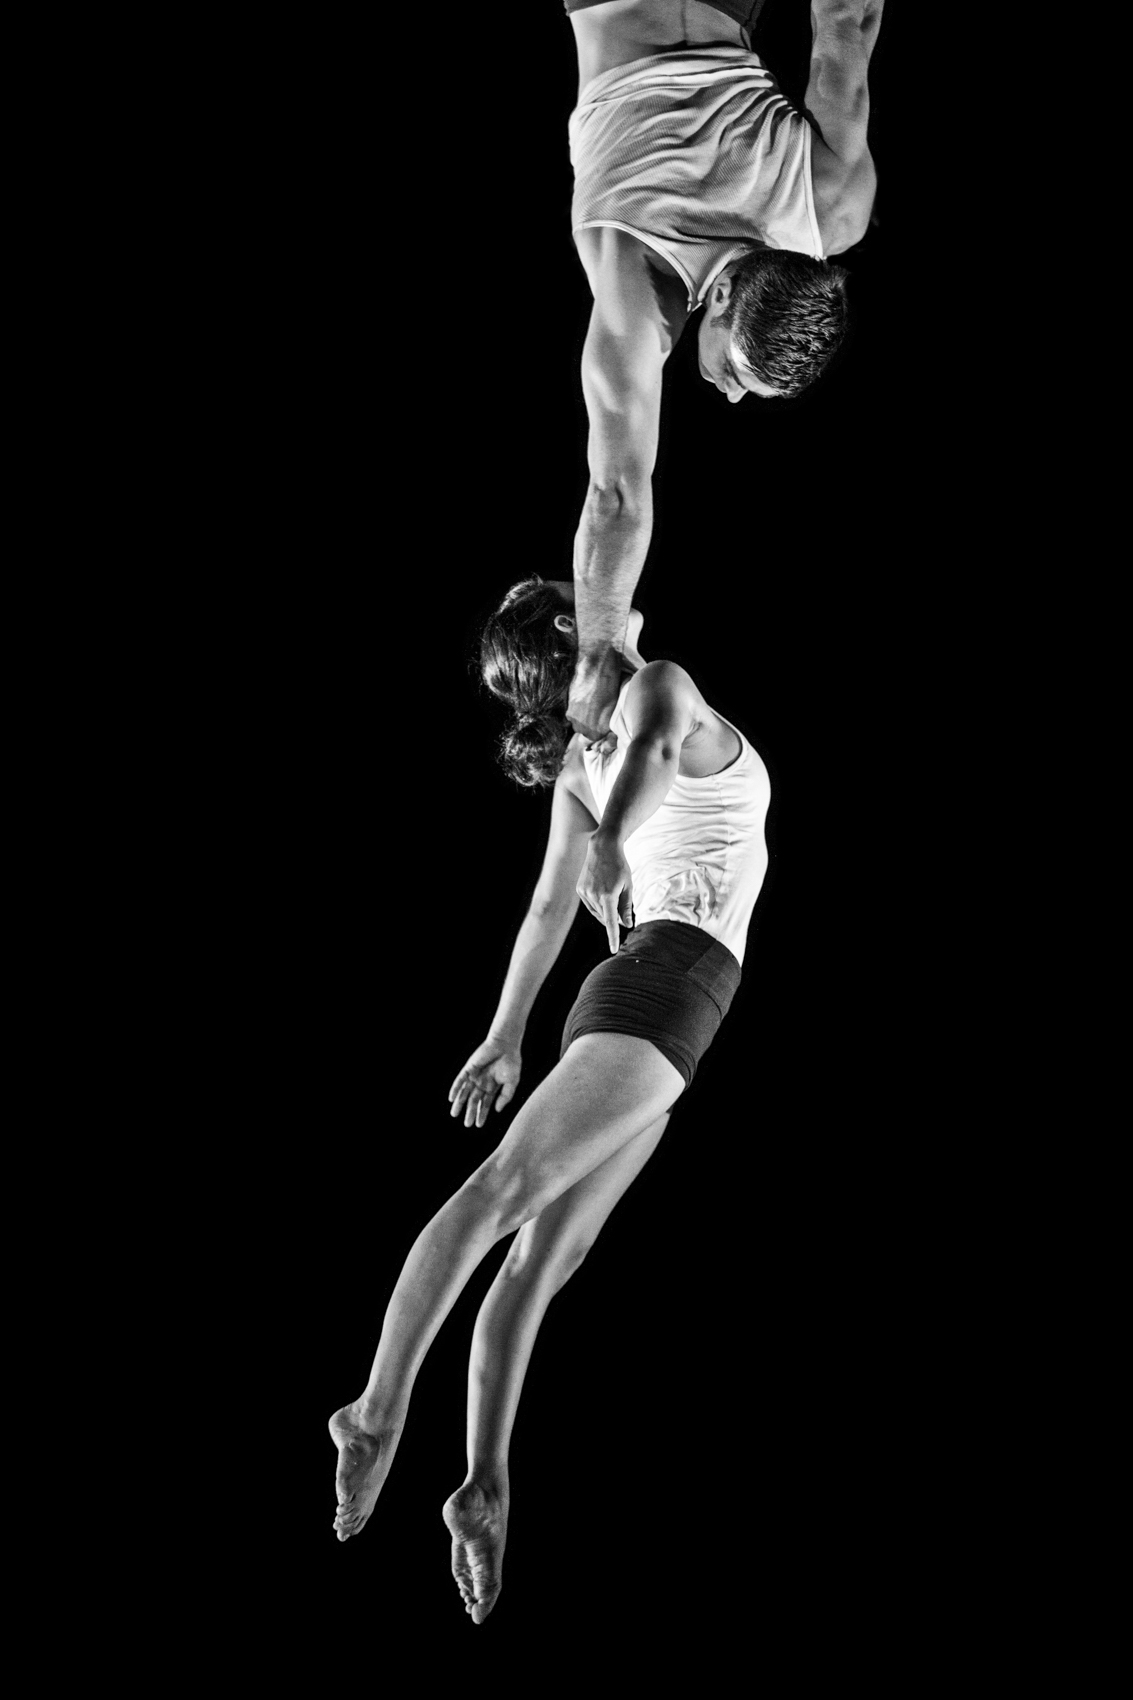 Sarah Tessier and Guilhem Cauchois / École Nationale de Cirque by Ben Hopper (2011)